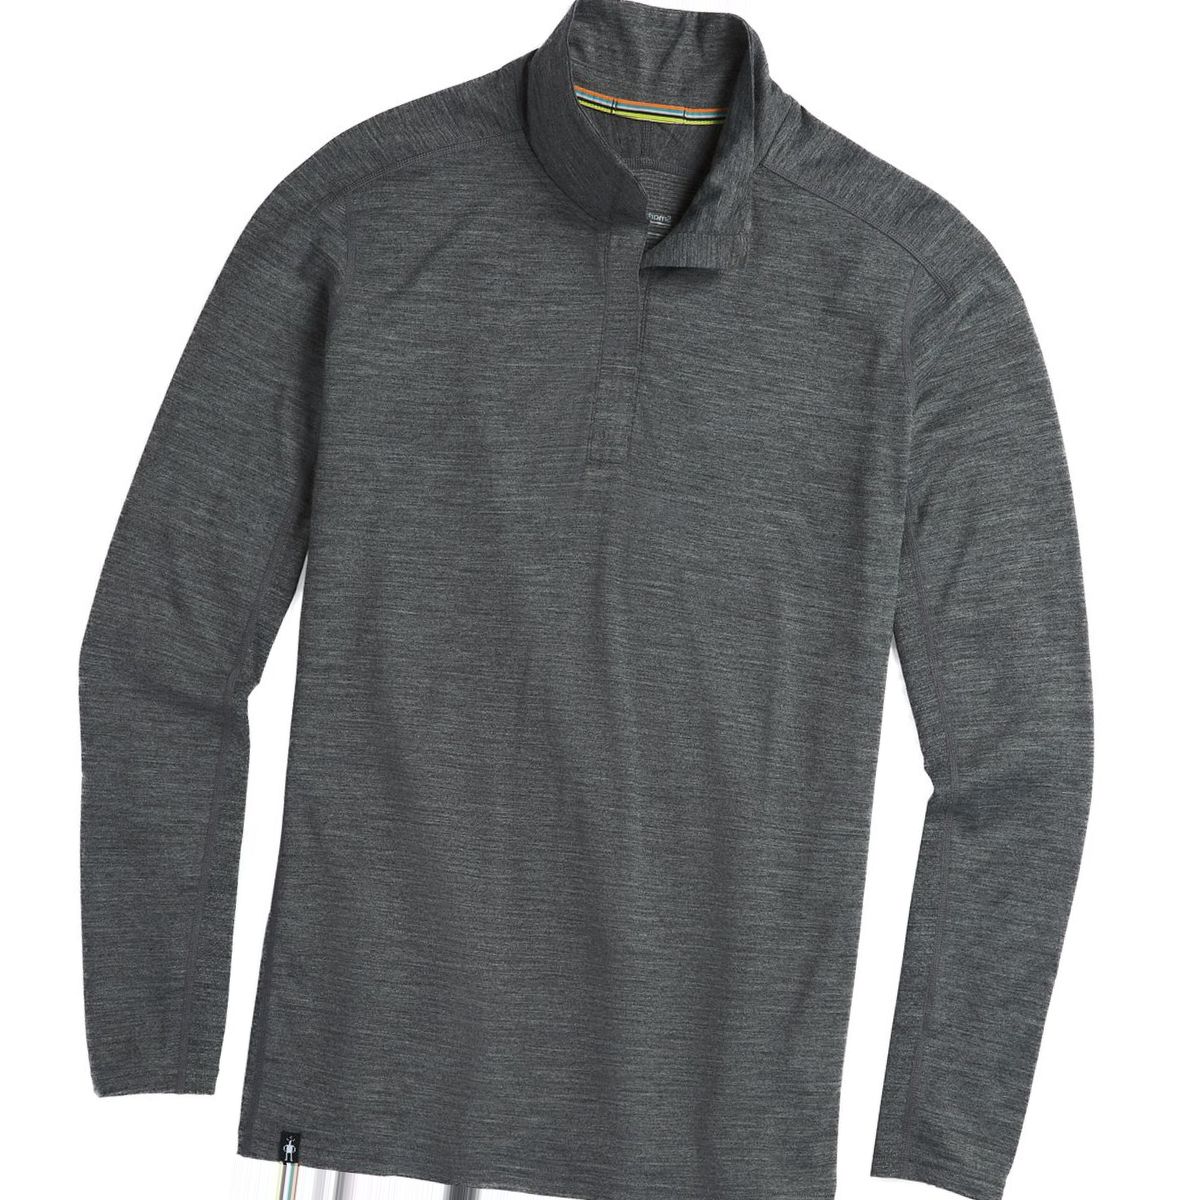 Smartwool Merino Sport 150 1/4-Zip Shirt - Men's